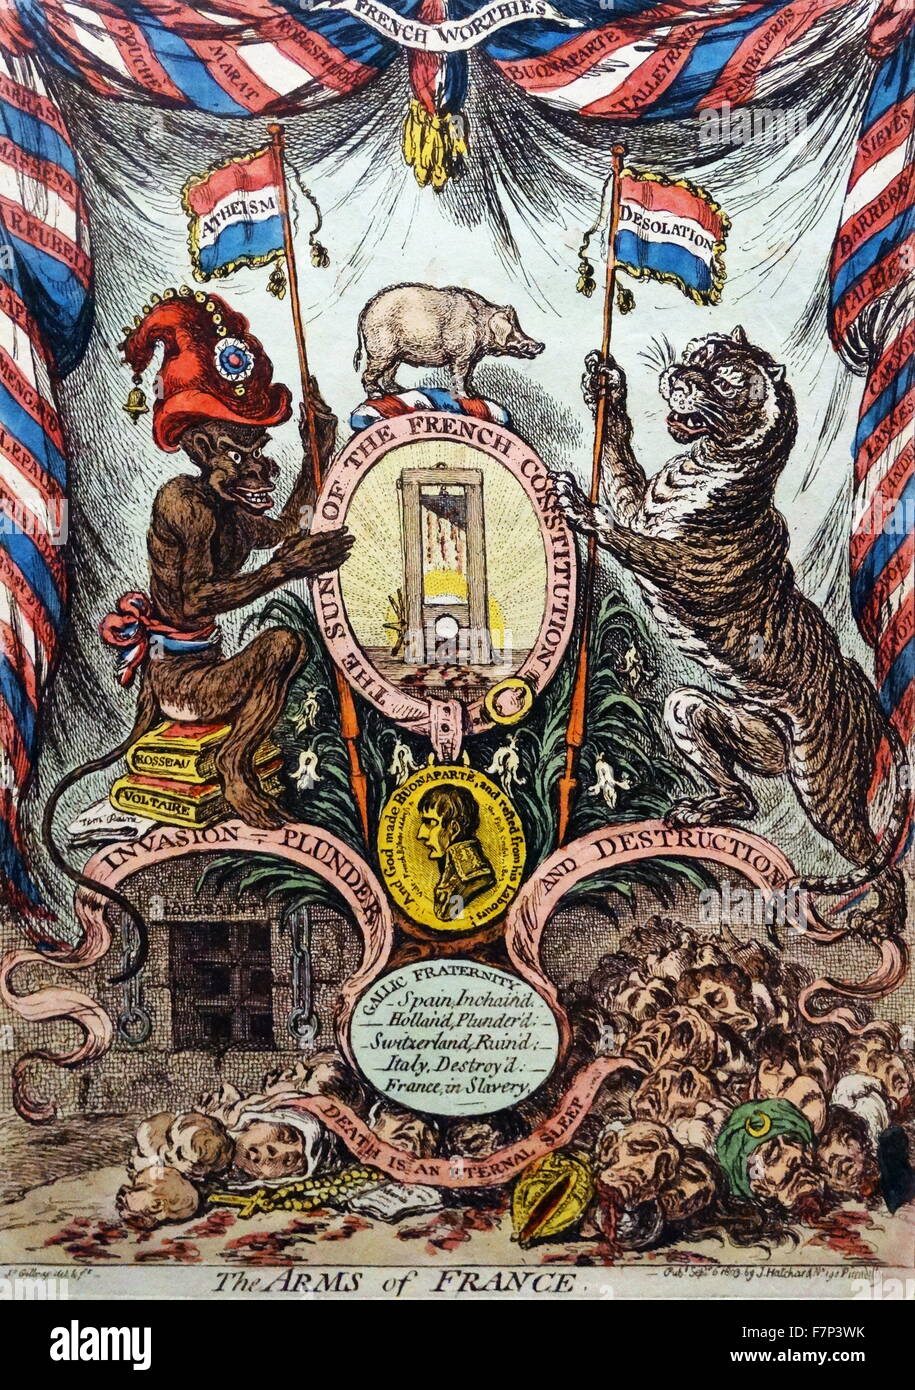 La gravure à la main, intitulé "Les armes de France' par James Gillray (1751-1815), caricaturiste et graveur anglais célèbre pour ses satires politiques et sociales gravé. Datée 1803 Banque D'Images